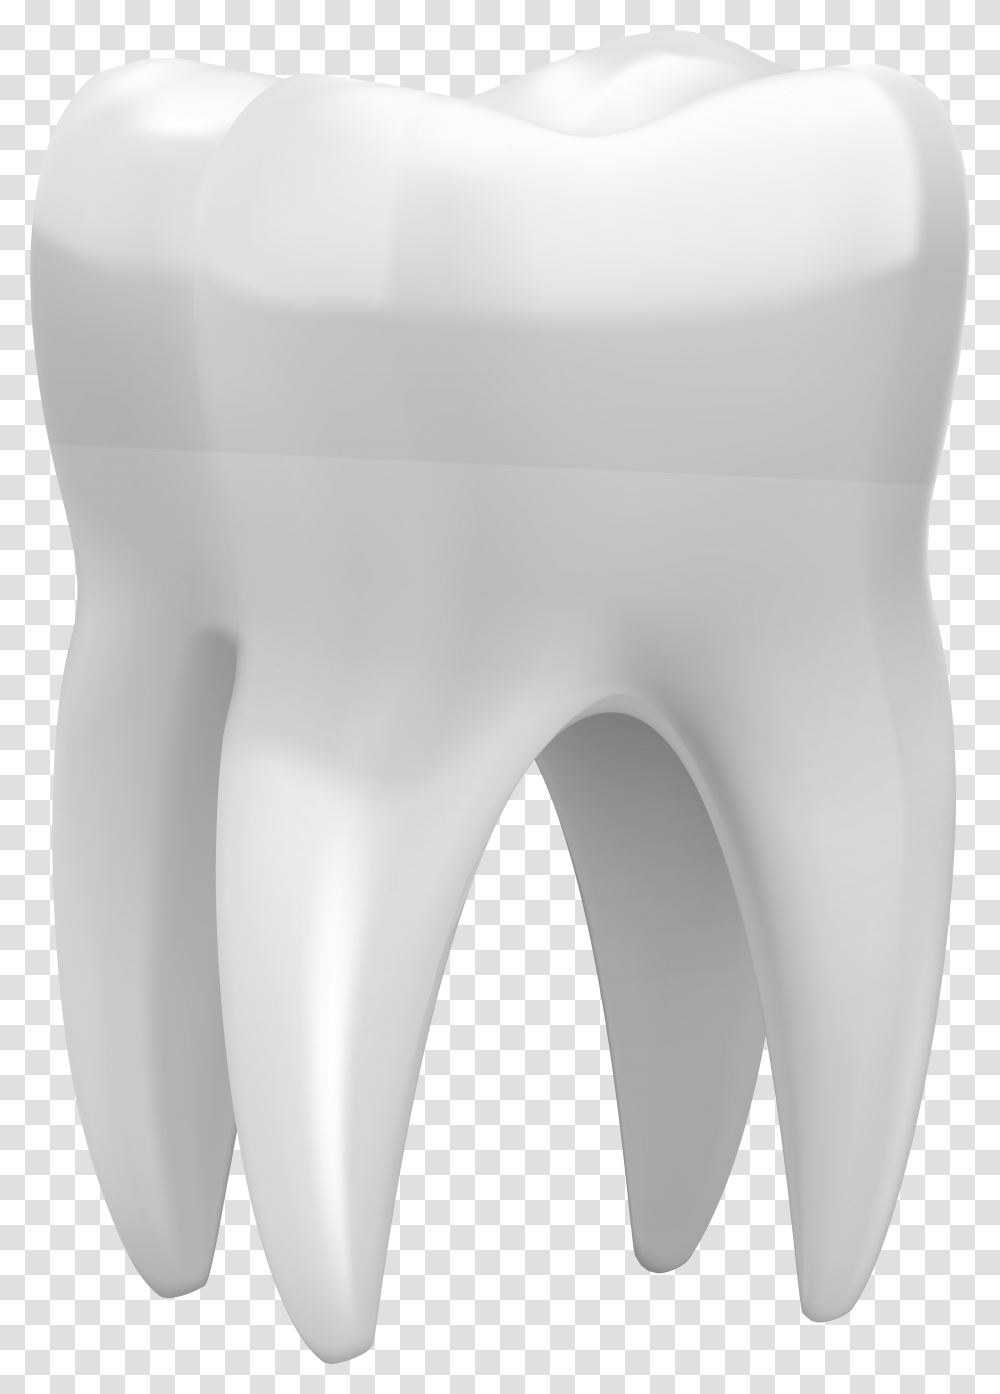 3d Tooth Clip Art 3d Tooth, Plot, Cutlery, Building, Torso Transparent Png